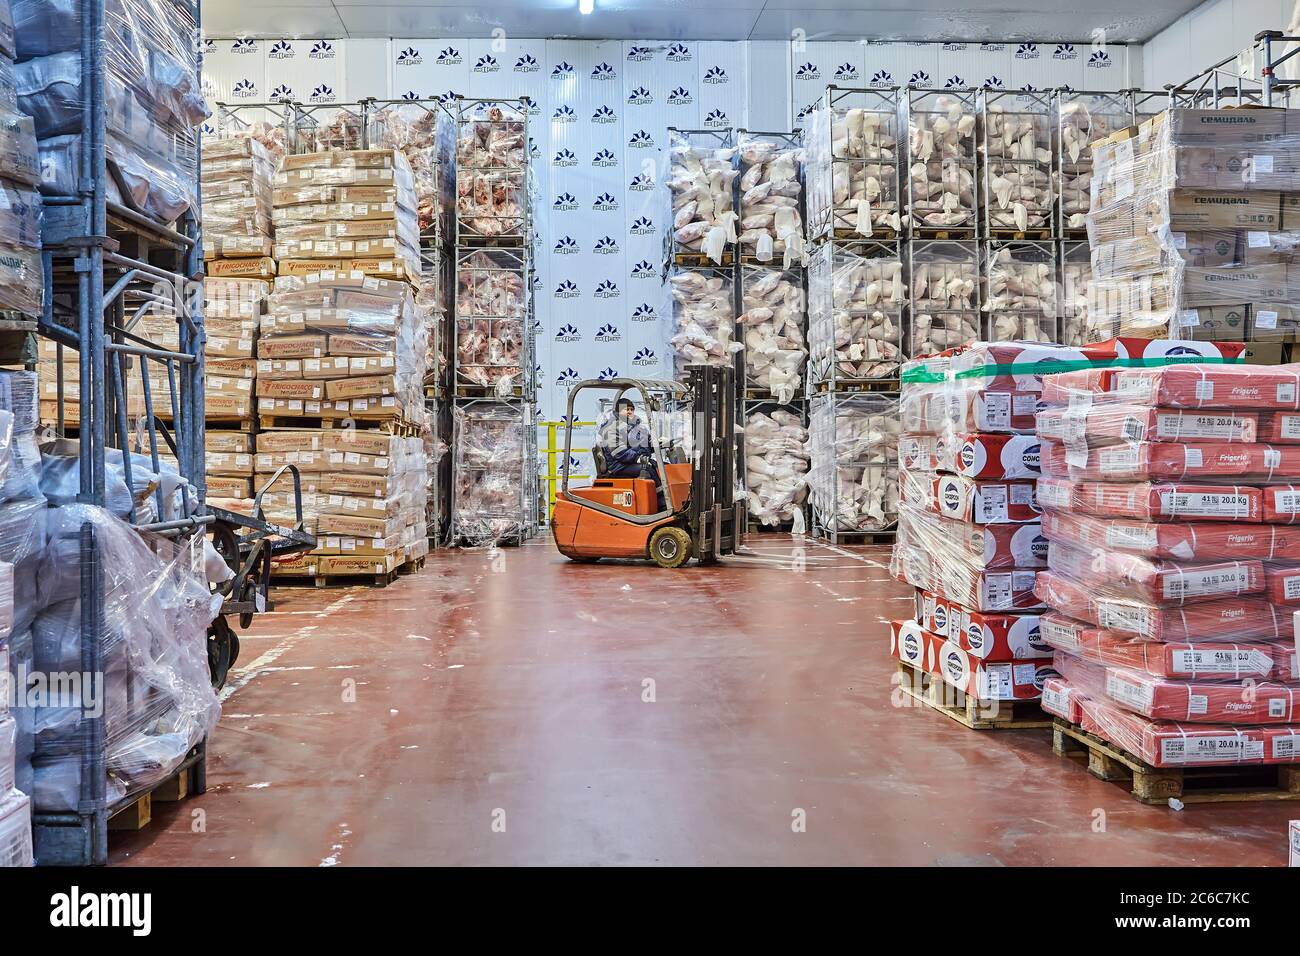 Saint-Pétersbourg, Russie - 10 octobre 2016 : stockage frigorifique,  entrepôt d'épicerie pour stocker les produits de viande périssables.  Entreposage de congélation. Le conducteur suite Photo Stock - Alamy